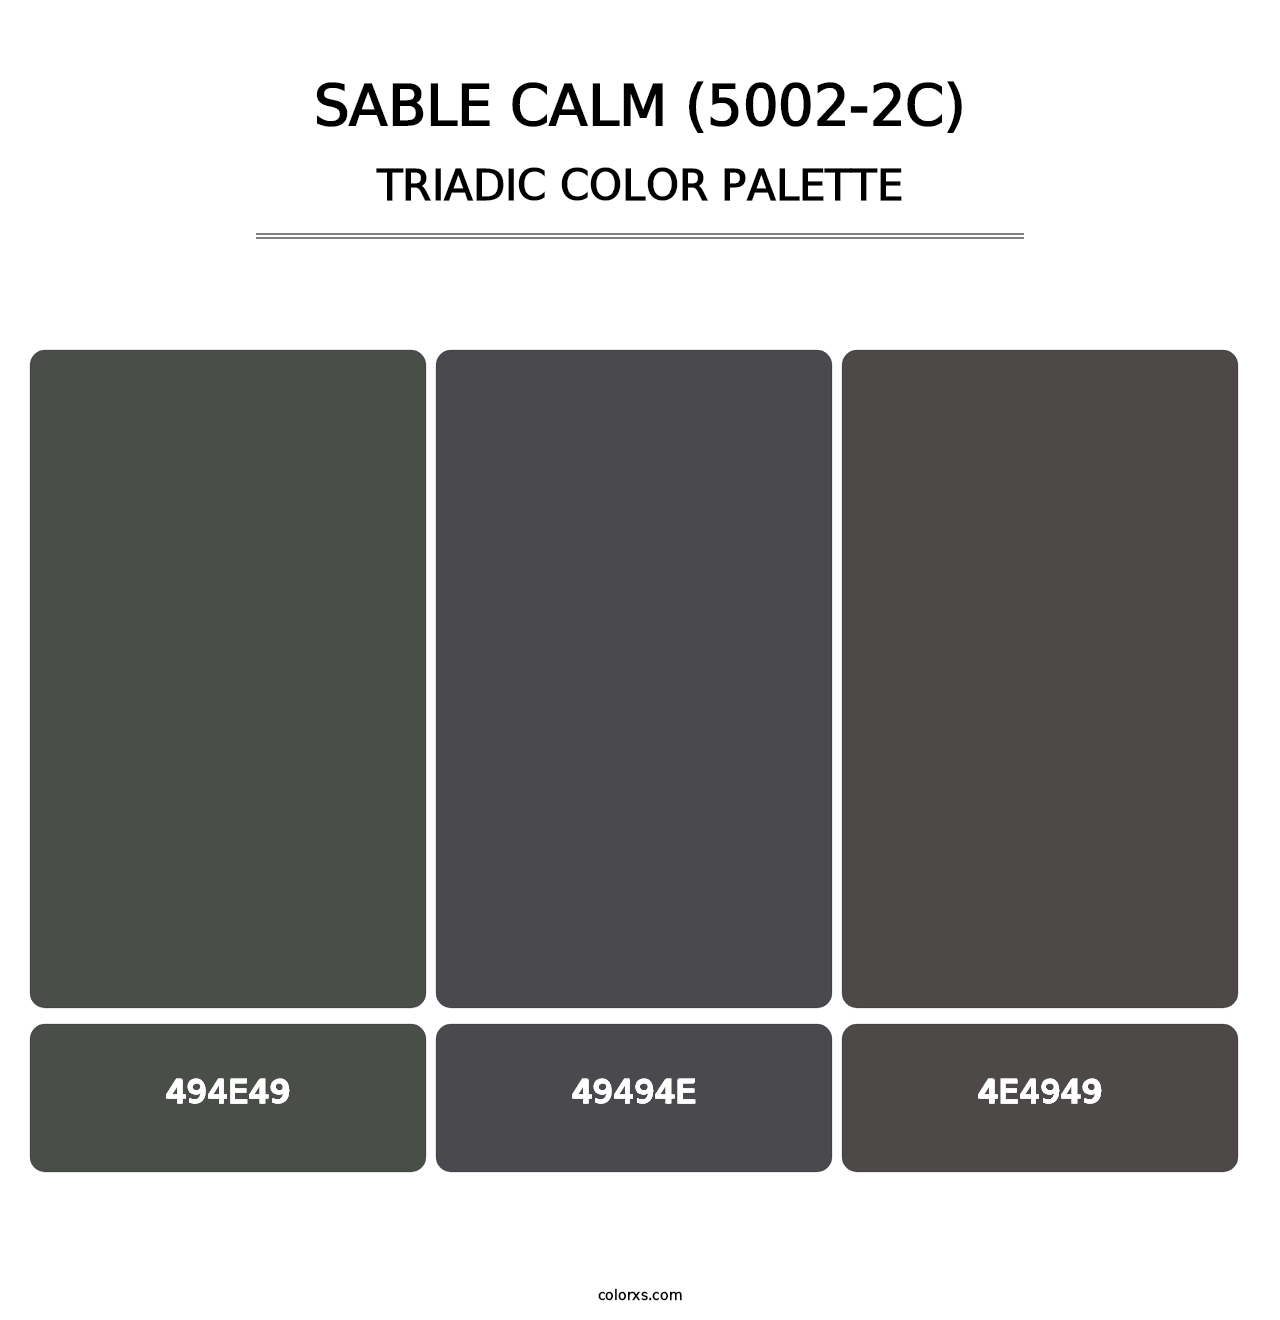 Sable Calm (5002-2C) - Triadic Color Palette